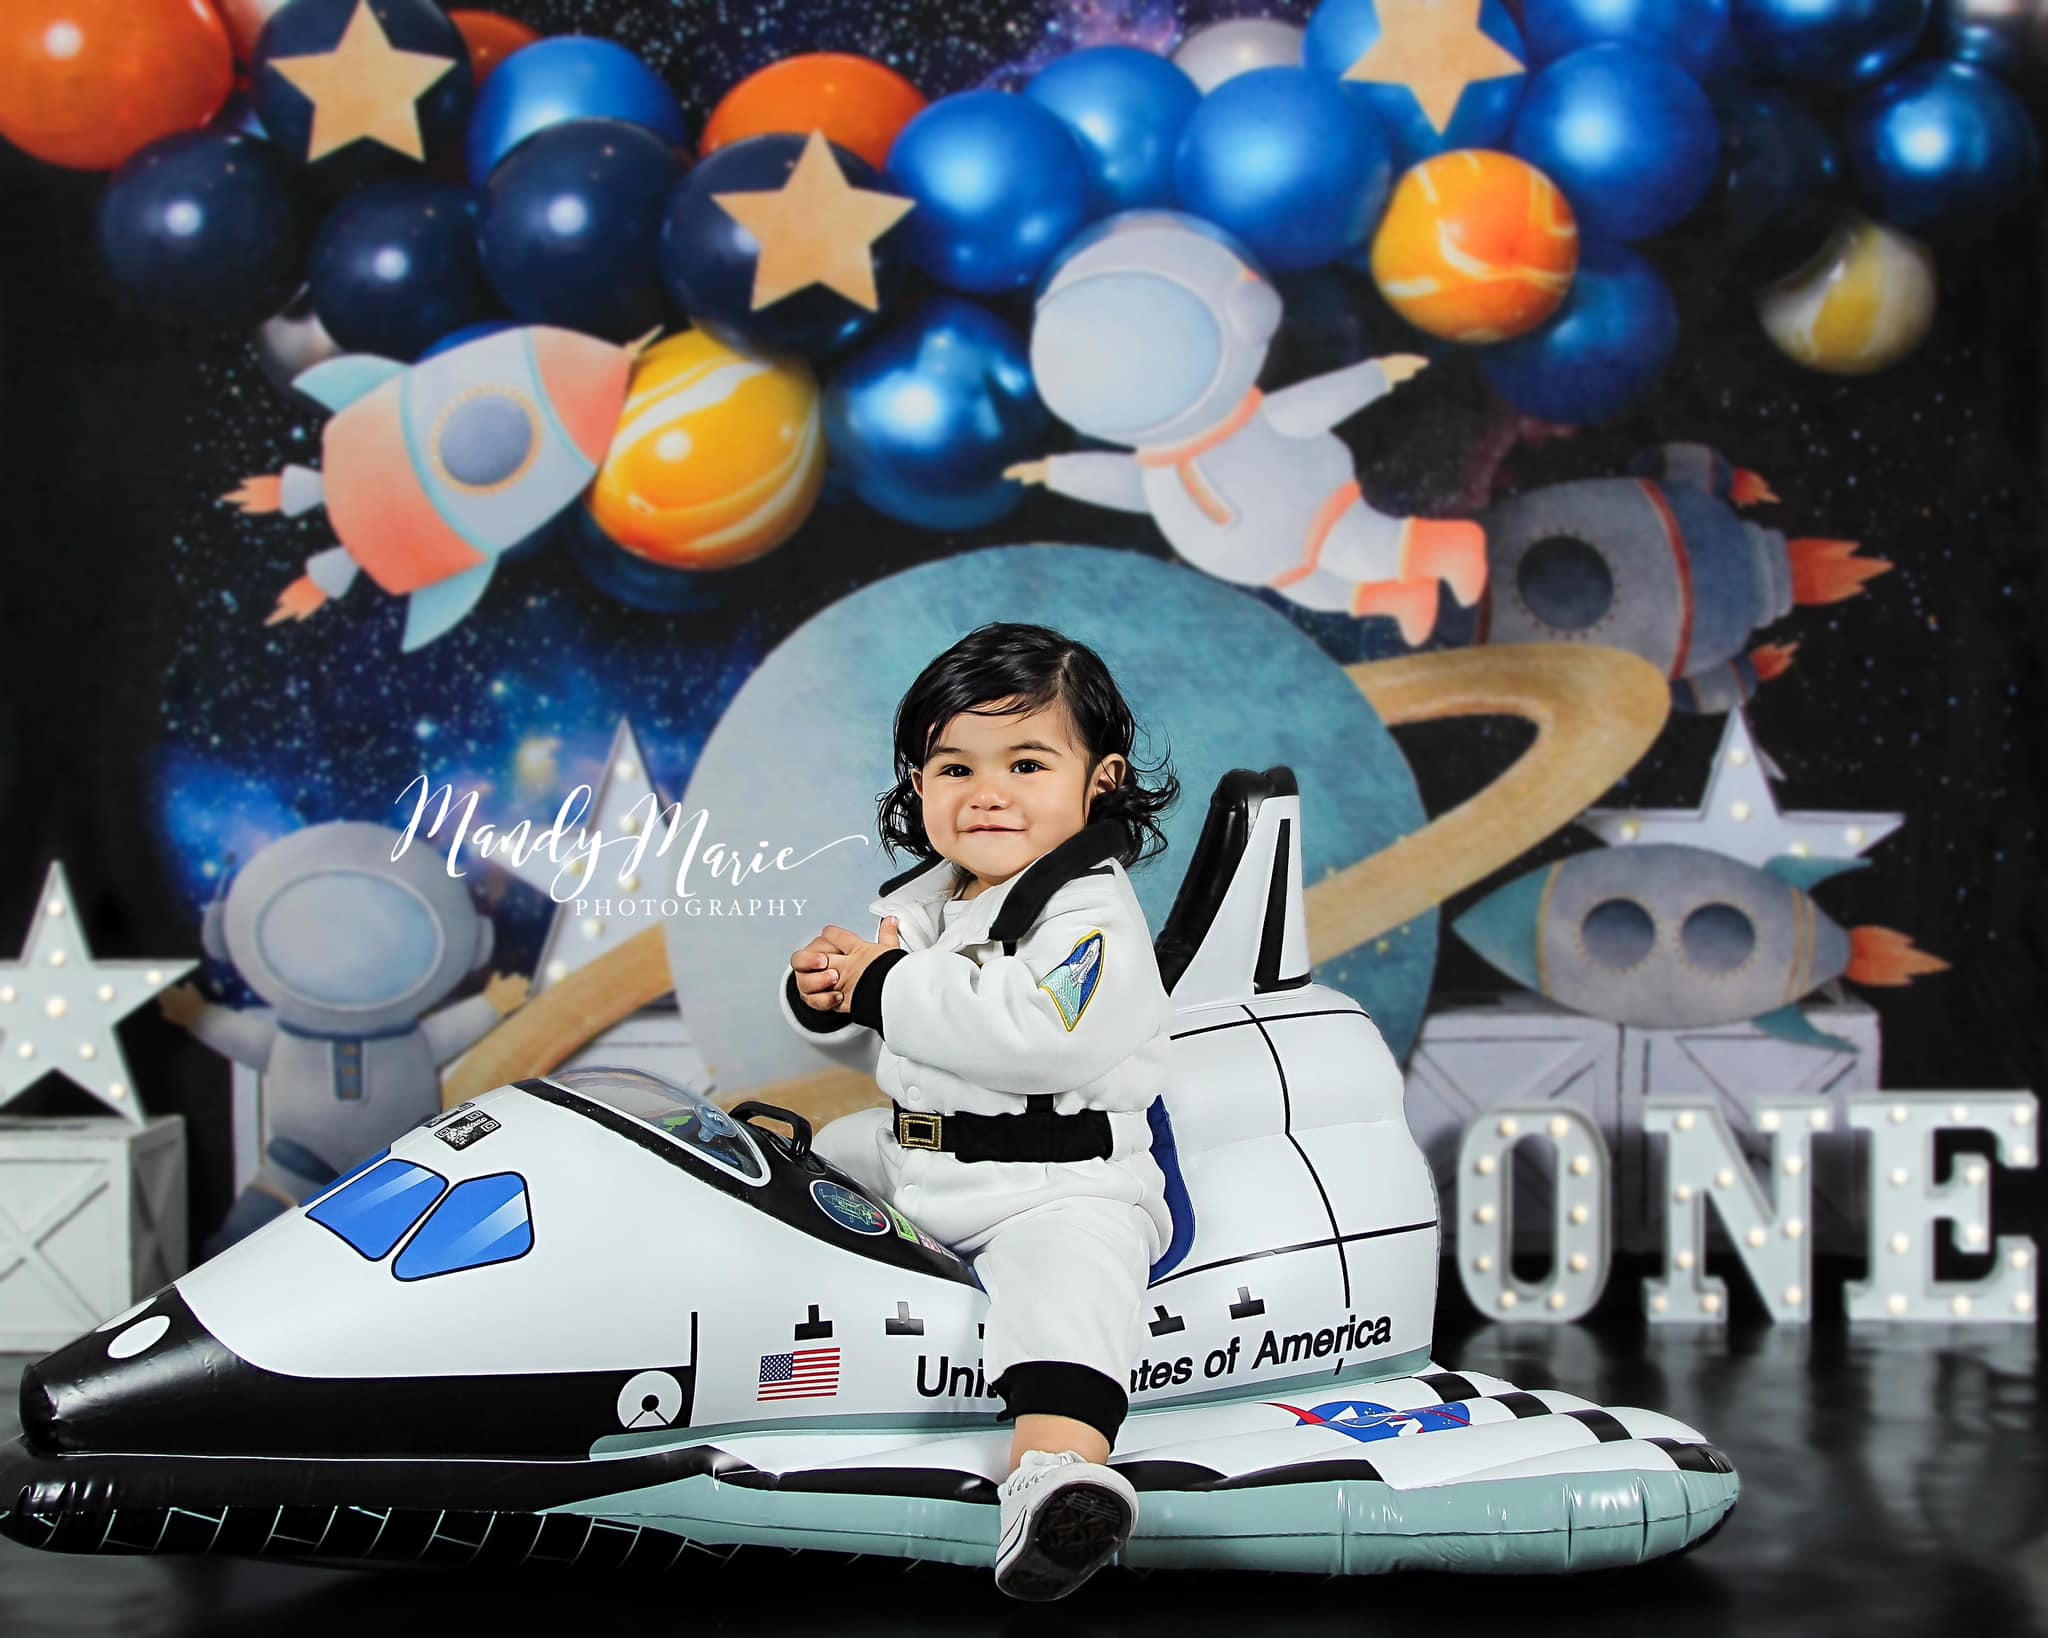 Kate Cosmos Ballons Anniversaire Astronaute Toile de fond conçue par Caitlin Lynch